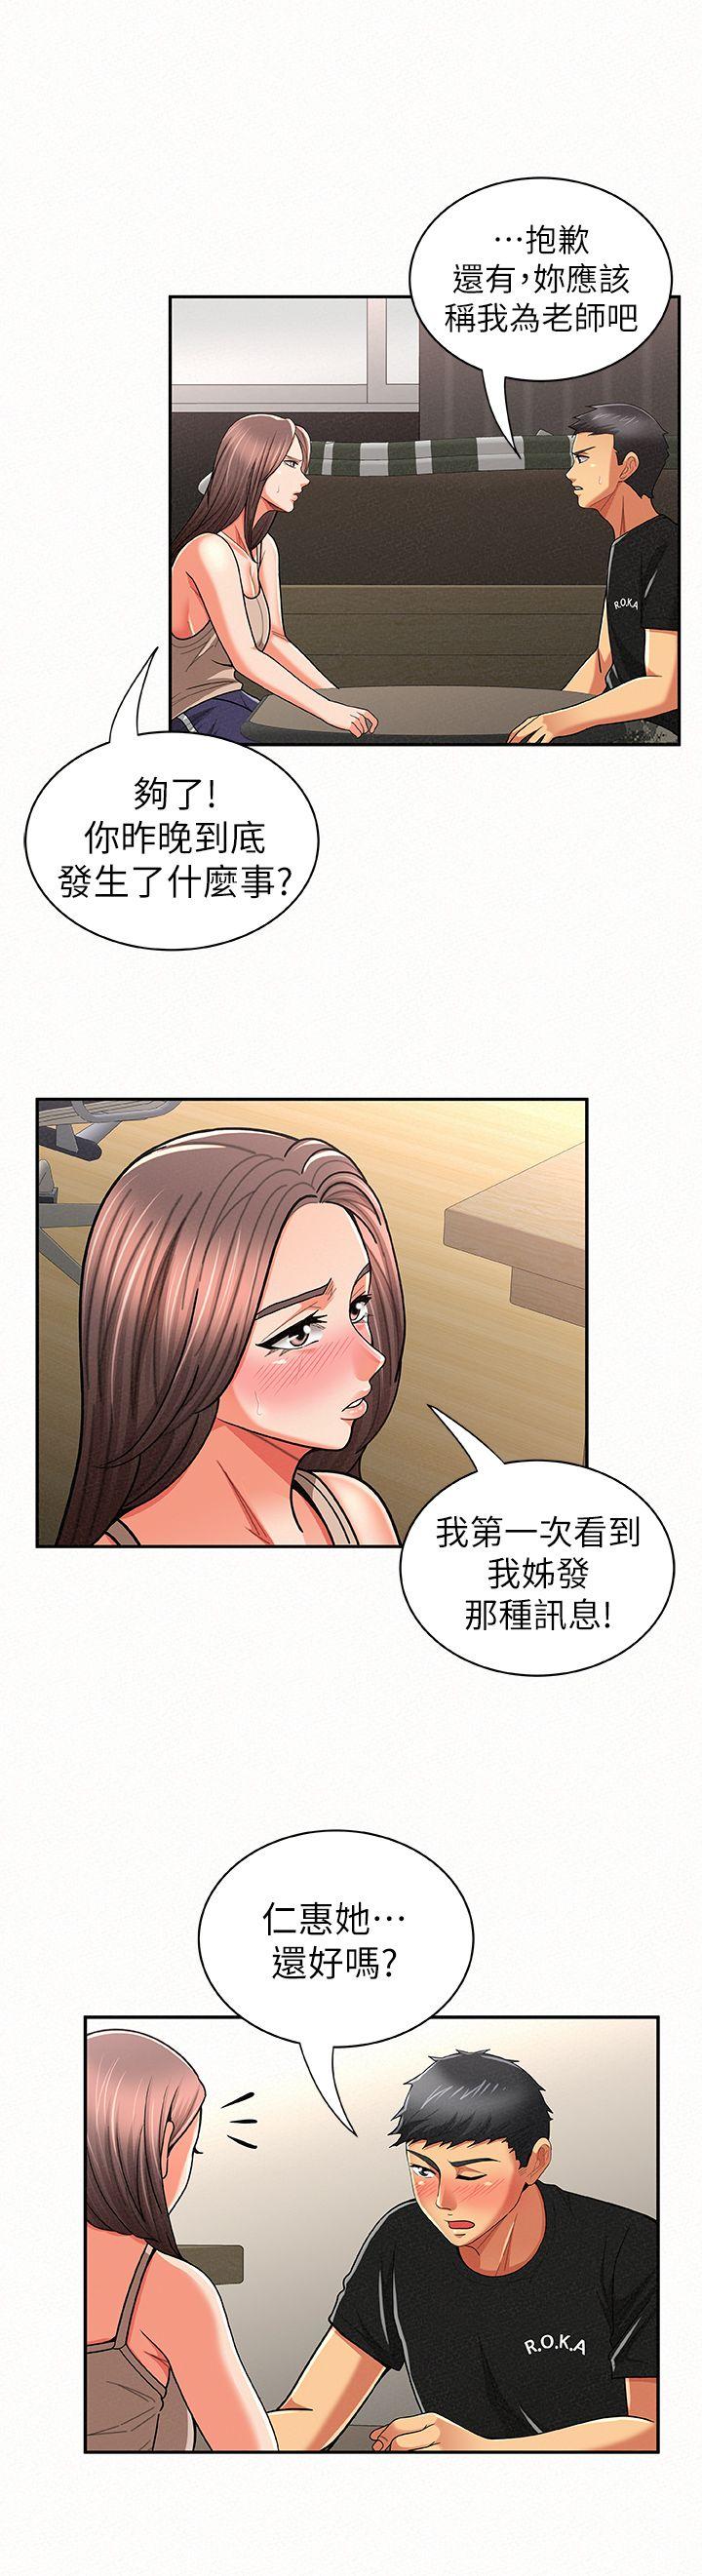 韩国污漫画 報告夫人 第20话-你跟仁惠进展到哪里了? 23